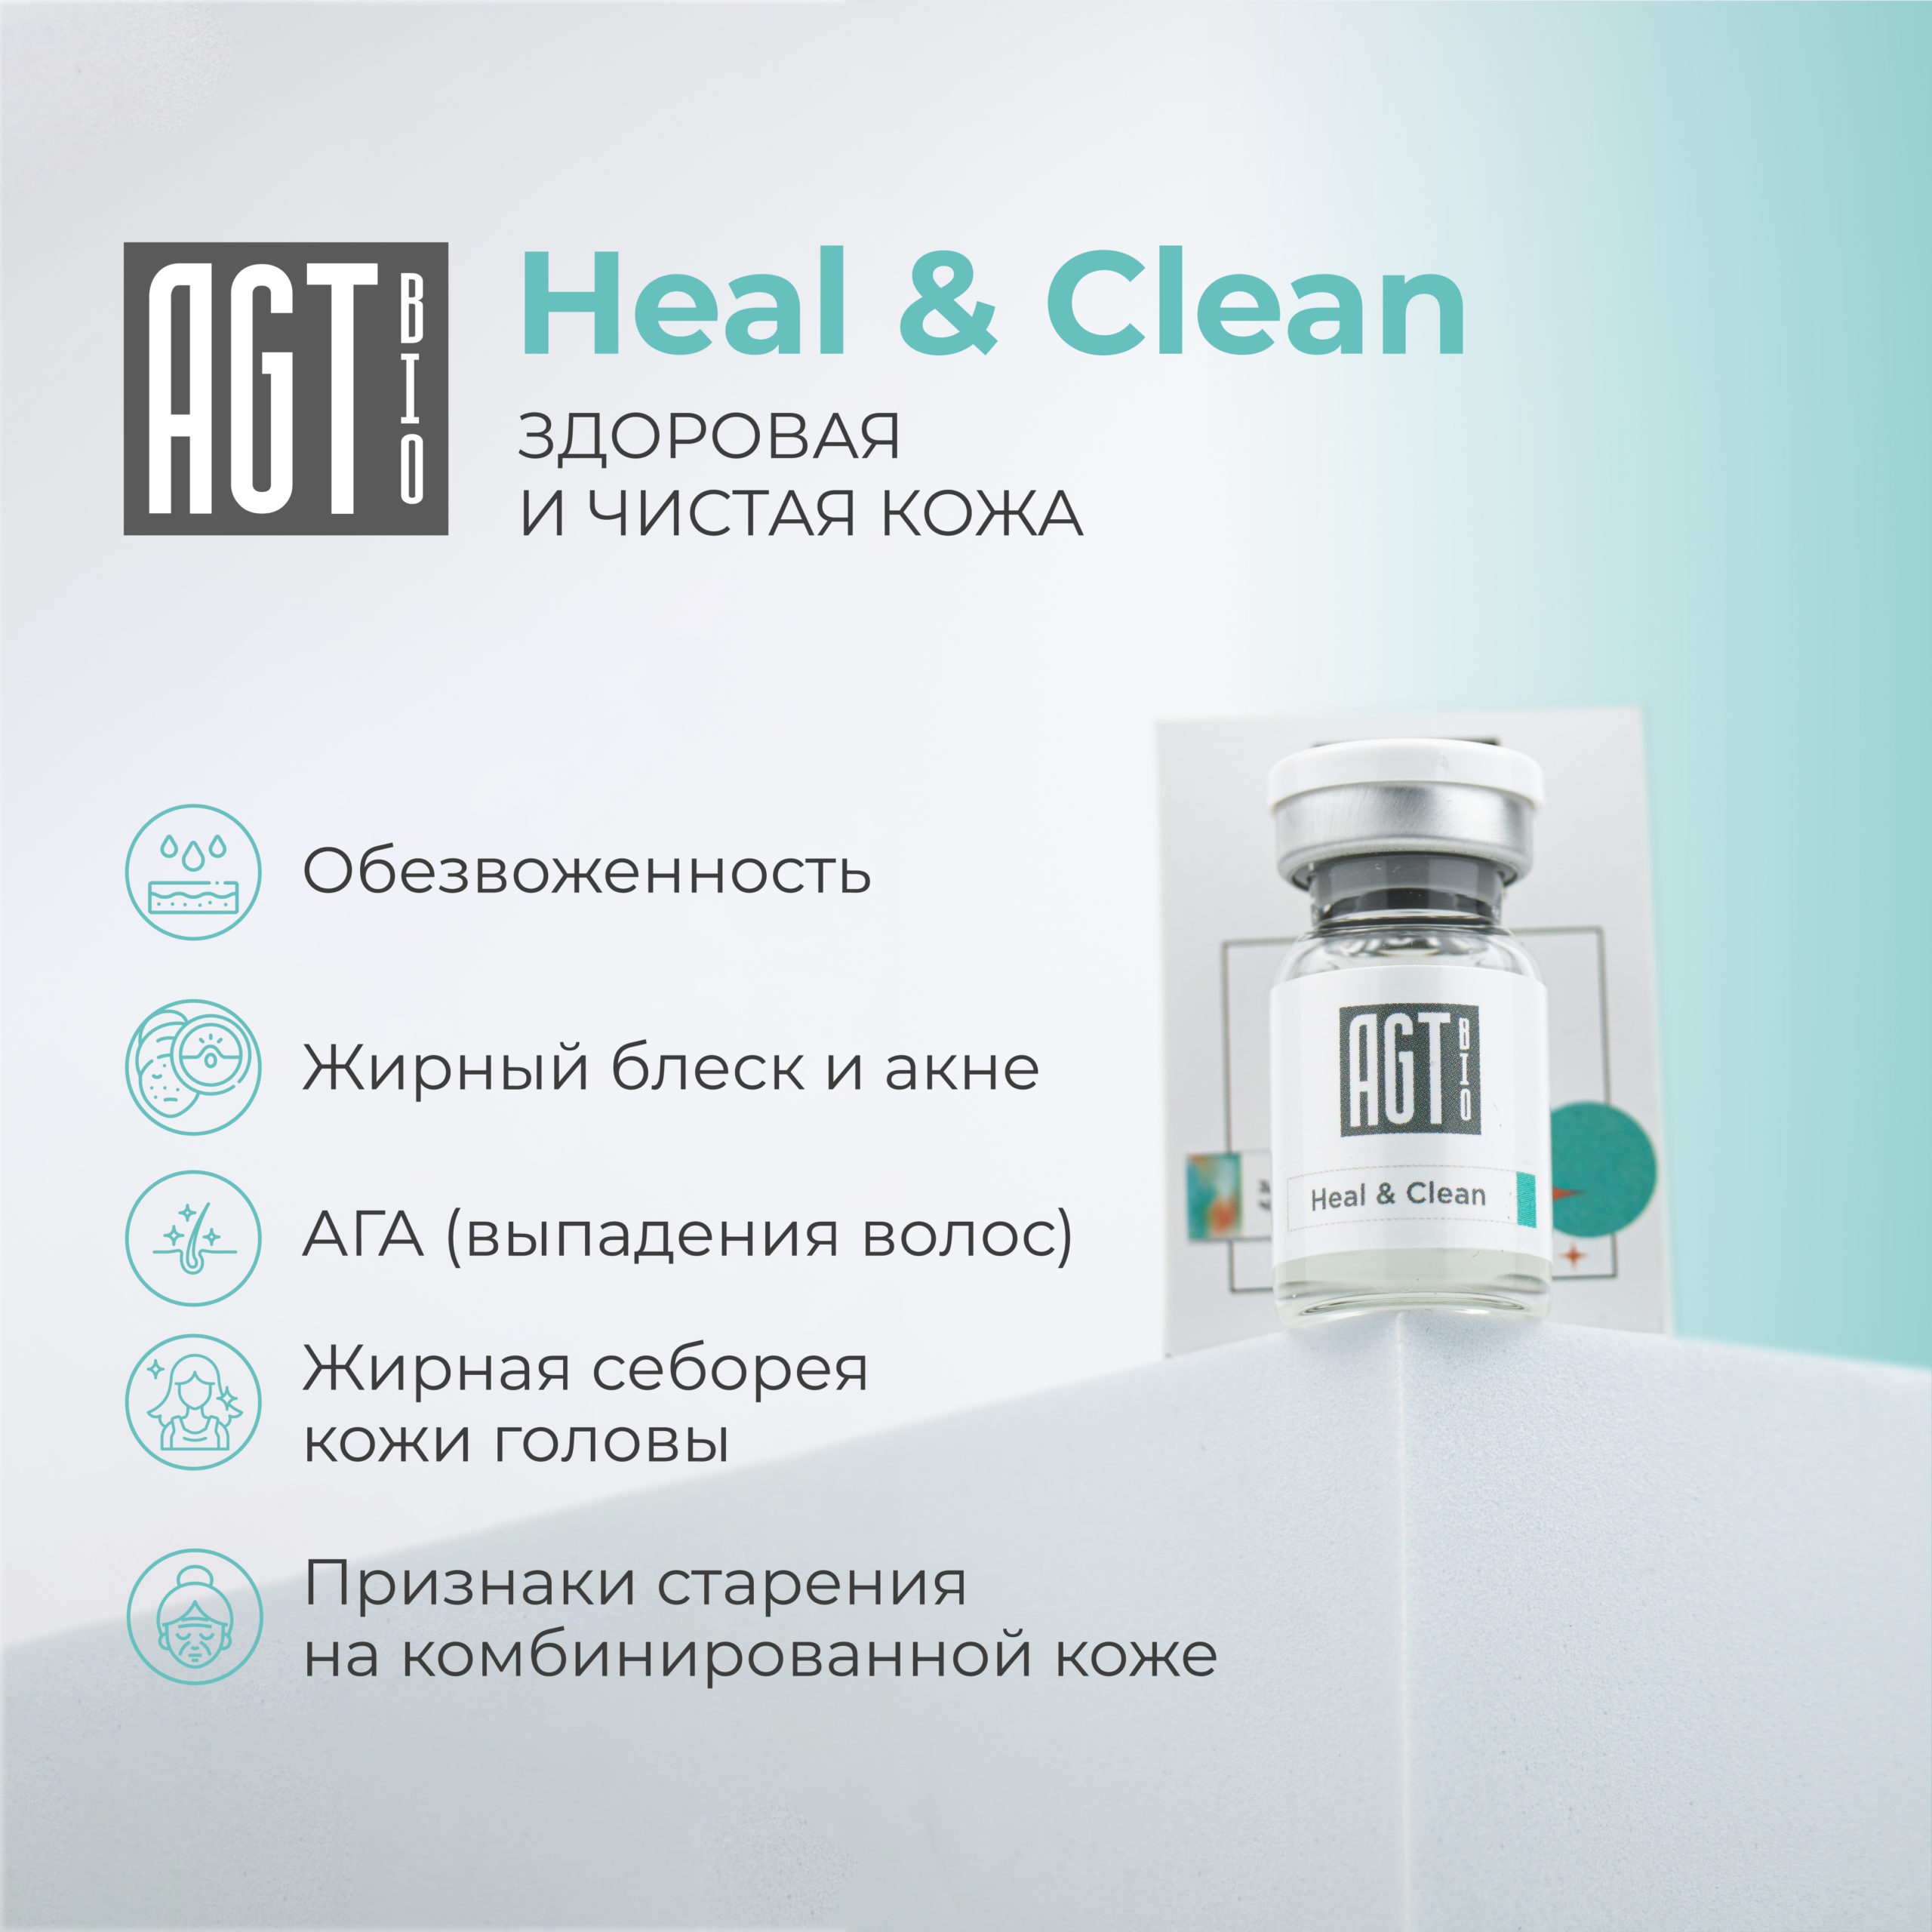 AGT Bio Heal & Clean